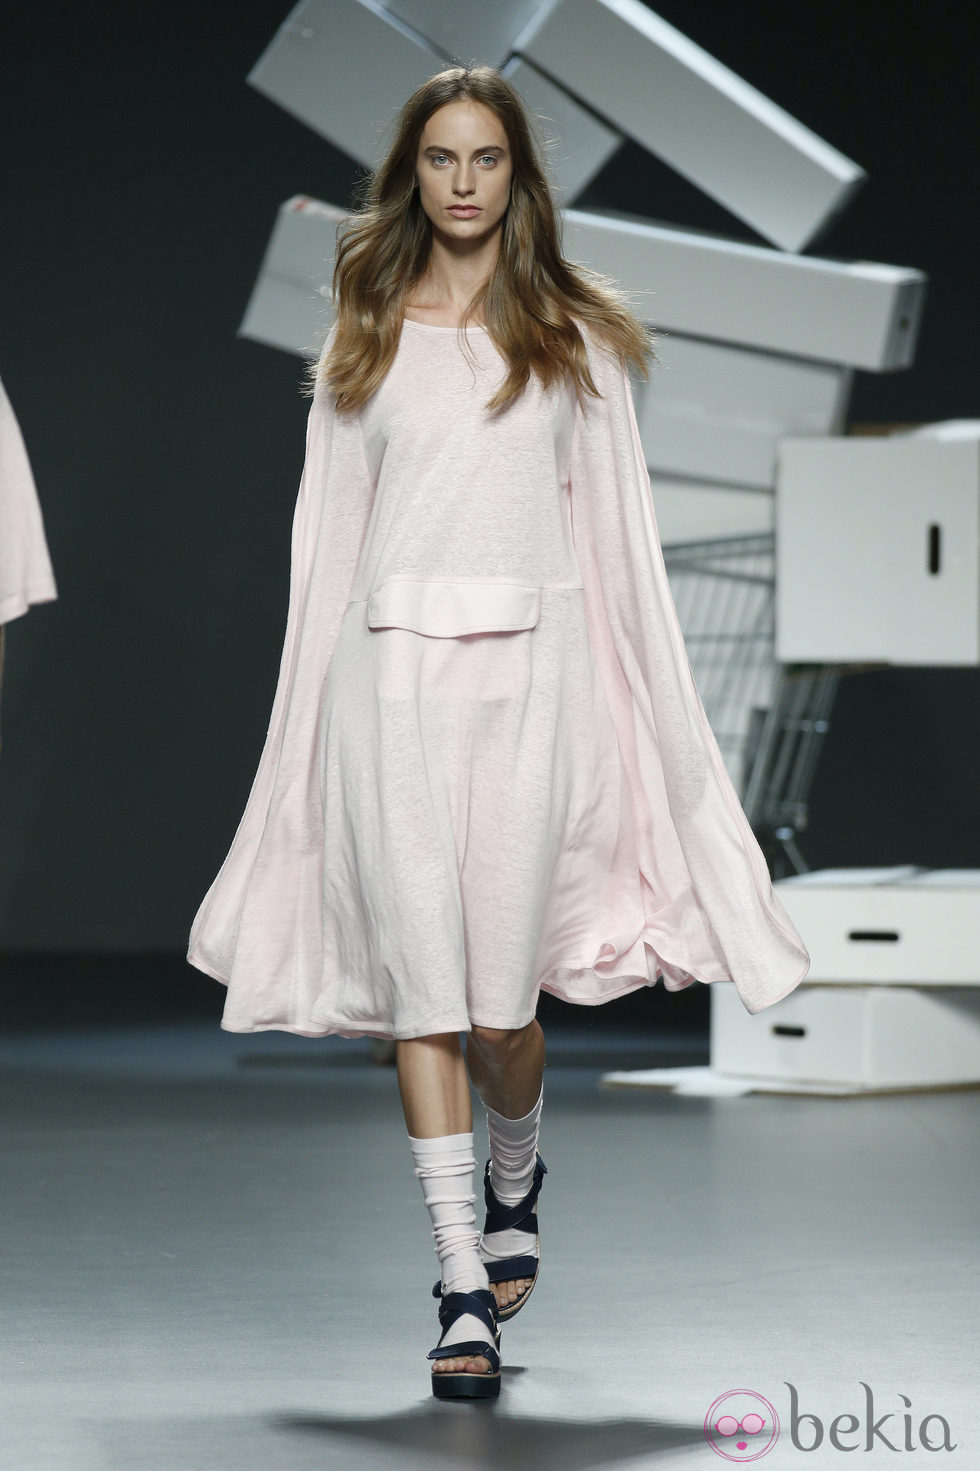 Vestido 'oversized' de David Catalán en EGO Madrid Fashion Week primavera/verano 2015